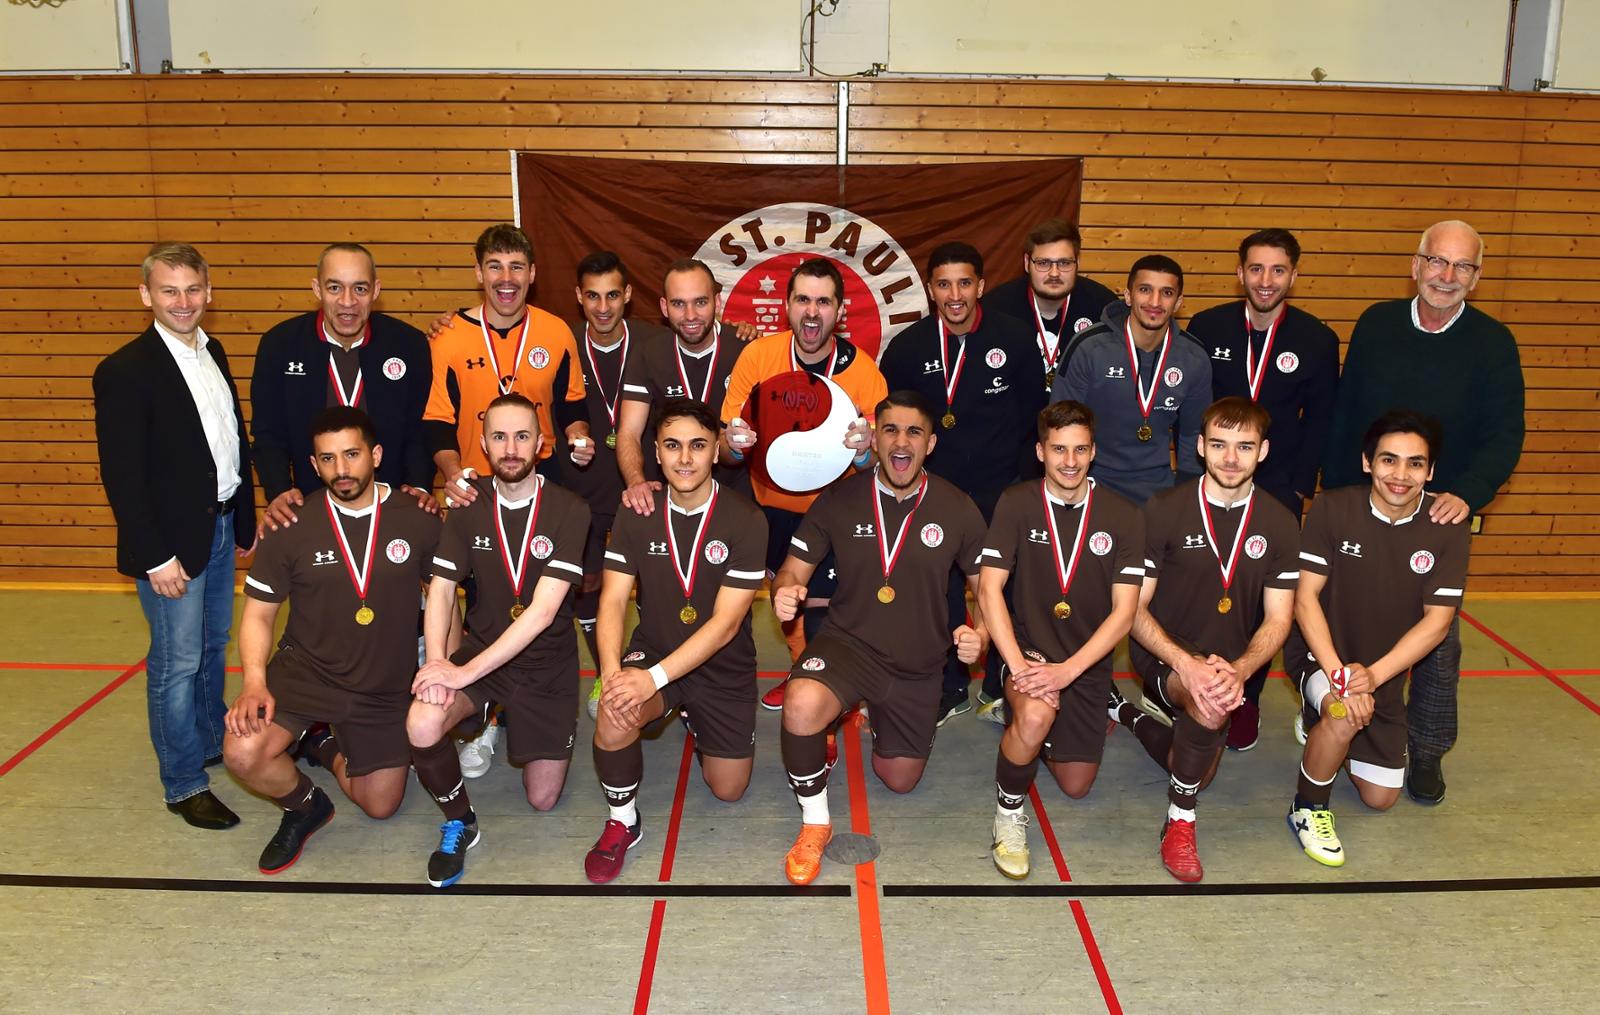 Gruppenfoto der Futsaler des FC St. Pauli mit der Meisterschale.